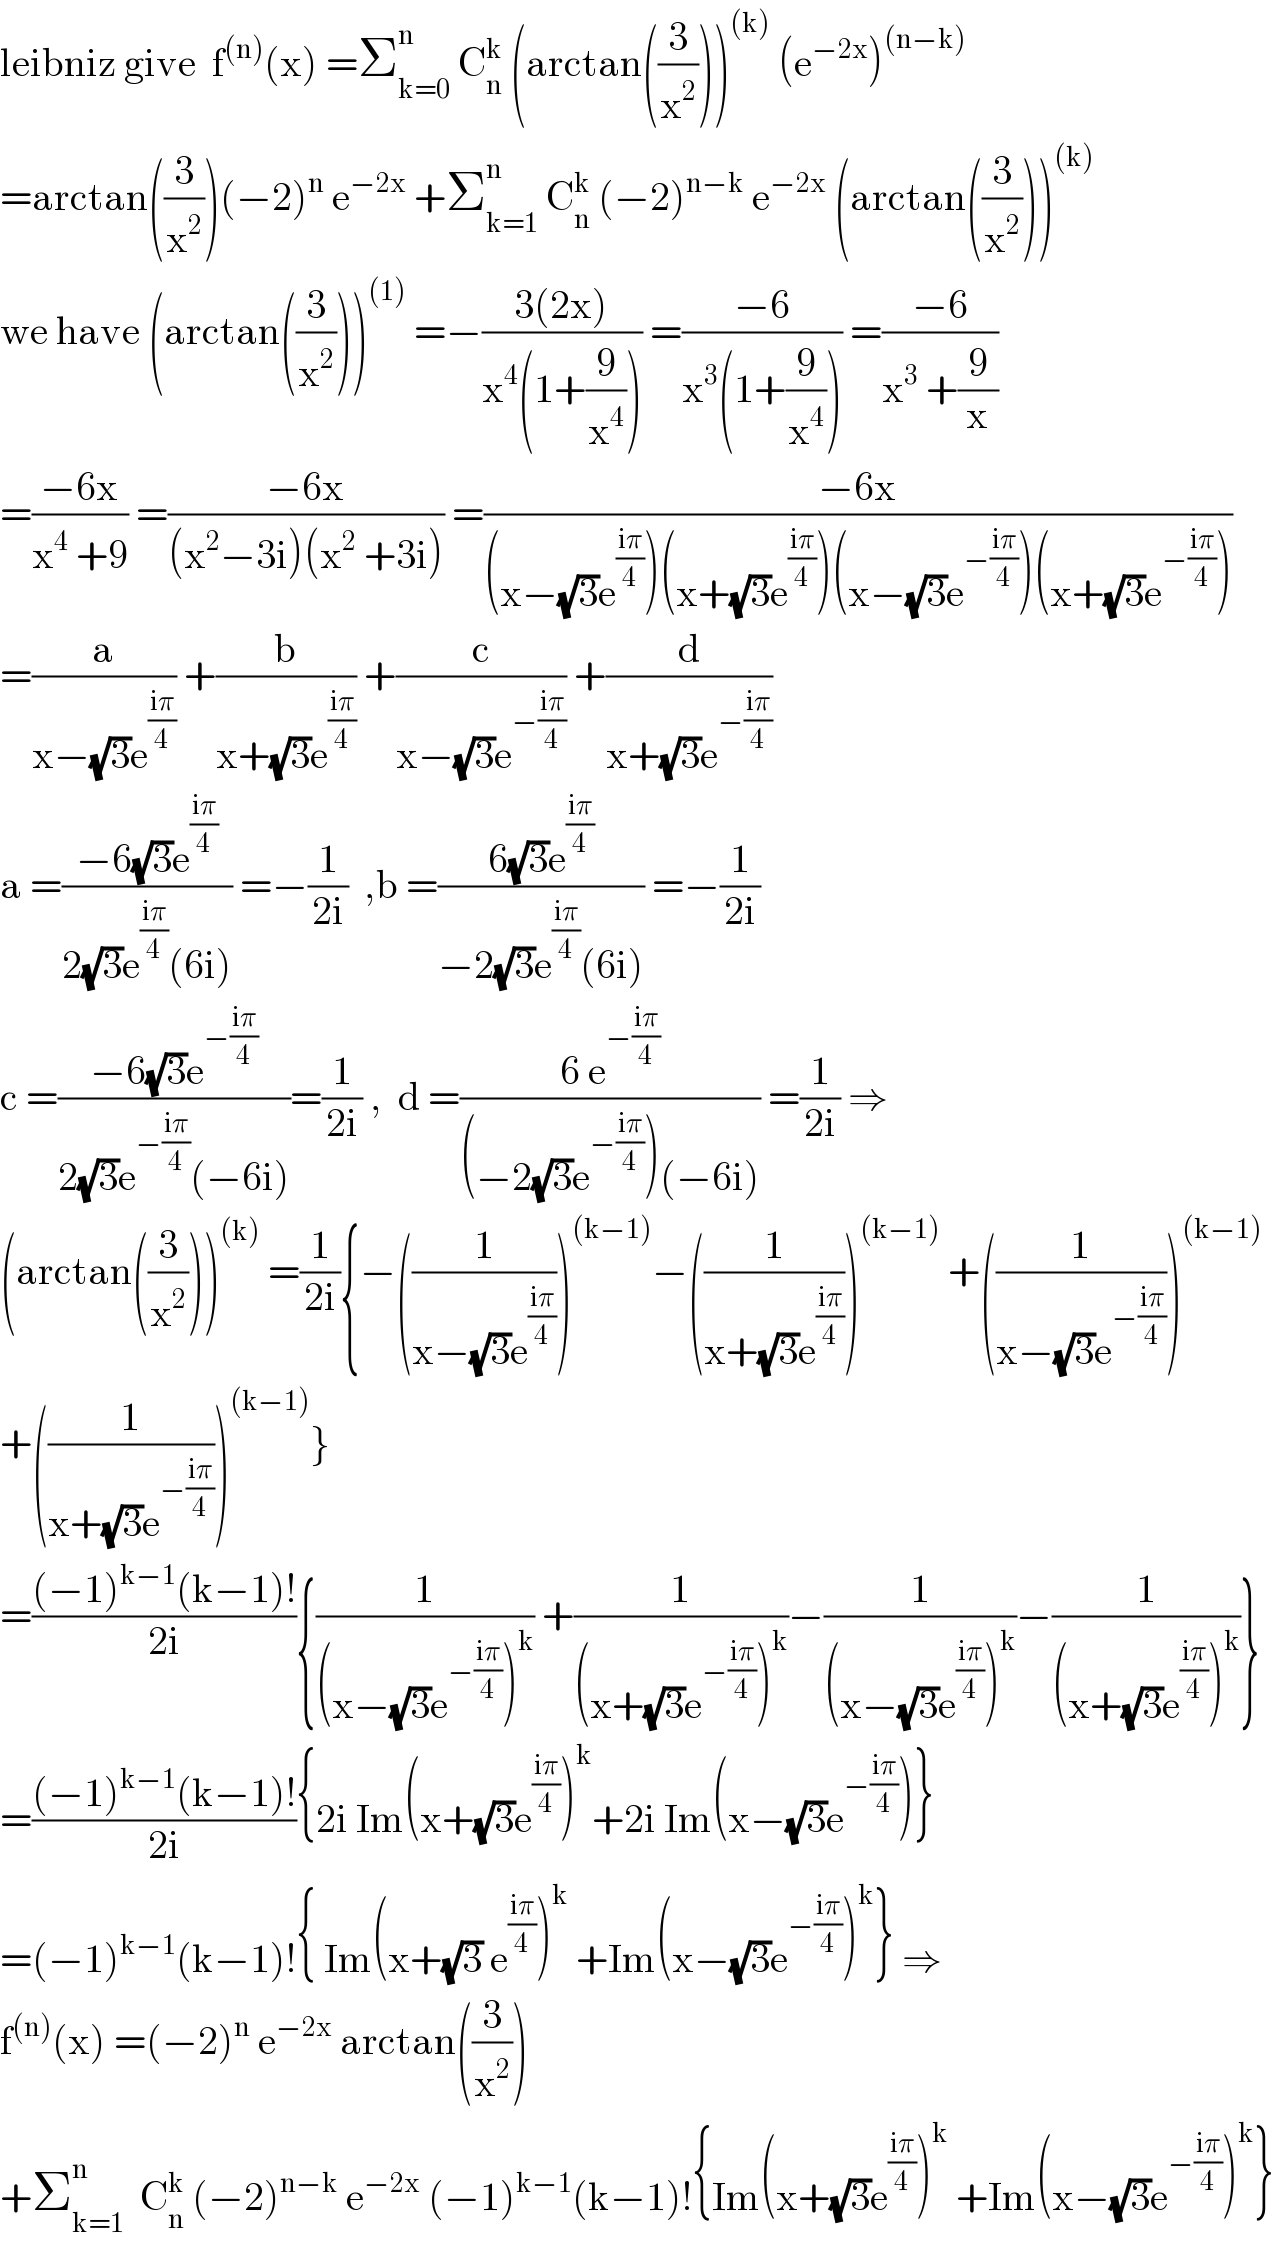 leibniz give  f^((n)) (x) =Σ_(k=0) ^n  C_n ^k  (arctan((3/x^2 )))^((k))  (e^(−2x) )^((n−k))   =arctan((3/x^2 ))(−2)^n  e^(−2x)  +Σ_(k=1) ^(n  )  C_n ^k  (−2)^(n−k)  e^(−2x)  (arctan((3/x^2 )))^((k))   we have (arctan((3/x^2 )))^((1))  =−((3(2x))/(x^4 (1+(9/x^4 )))) =((−6)/(x^3 (1+(9/x^4 )))) =((−6)/(x^3  +(9/x)))  =((−6x)/(x^4  +9)) =((−6x)/((x^2 −3i)(x^2  +3i))) =((−6x)/((x−(√3)e^((iπ)/4) )(x+(√3)e^((iπ)/4) )(x−(√3)e^(−((iπ)/4)) )(x+(√3)e^(−((iπ)/4)) )))  =(a/(x−(√3)e^((iπ)/4) )) +(b/(x+(√3)e^((iπ)/4) )) +(c/(x−(√3)e^(−((iπ)/4)) )) +(d/(x+(√3)e^(−((iπ)/4)) ))  a =((−6(√3)e^((iπ)/4) )/(2(√3)e^((iπ)/4) (6i))) =−(1/(2i))  ,b =((6(√3)e^((iπ)/4) )/(−2(√3)e^((iπ)/4) (6i))) =−(1/(2i))  c =((−6(√3)e^(−((iπ)/4)) )/(2(√3)e^(−((iπ)/4)) (−6i)))=(1/(2i)) ,  d =((6 e^(−((iπ)/4)) )/((−2(√3)e^(−((iπ)/4)) )(−6i))) =(1/(2i)) ⇒  (arctan((3/x^2 )))^((k))  =(1/(2i)){−((1/(x−(√3)e^((iπ)/4) )))^((k−1)) −((1/(x+(√3)e^((iπ)/4) )))^((k−1))  +((1/(x−(√3)e^(−((iπ)/4)) )))^((k−1))   +((1/(x+(√3)e^(−((iπ)/4)) )))^((k−1)) }  =(((−1)^(k−1) (k−1)!)/(2i)){(1/((x−(√3)e^(−((iπ)/4)) )^k )) +(1/((x+(√3)e^(−((iπ)/4)) )^k ))−(1/((x−(√3)e^((iπ)/4) )^k ))−(1/((x+(√3)e^((iπ)/4) )^k ))}  =(((−1)^(k−1) (k−1)!)/(2i)){2i Im(x+(√3)e^((iπ)/4) )^k +2i Im(x−(√3)e^(−((iπ)/4)) )}  =(−1)^(k−1) (k−1)!{ Im(x+(√3) e^((iπ)/4) )^k  +Im(x−(√3)e^(−((iπ)/4)) )^k } ⇒  f^((n)) (x) =(−2)^n  e^(−2x)  arctan((3/x^2 ))  +Σ_(k=1) ^n   C_n ^k  (−2)^(n−k)  e^(−2x)  (−1)^(k−1) (k−1)!{Im(x+(√3)e^((iπ)/4) )^k  +Im(x−(√3)e^(−((iπ)/4)) )^k }  